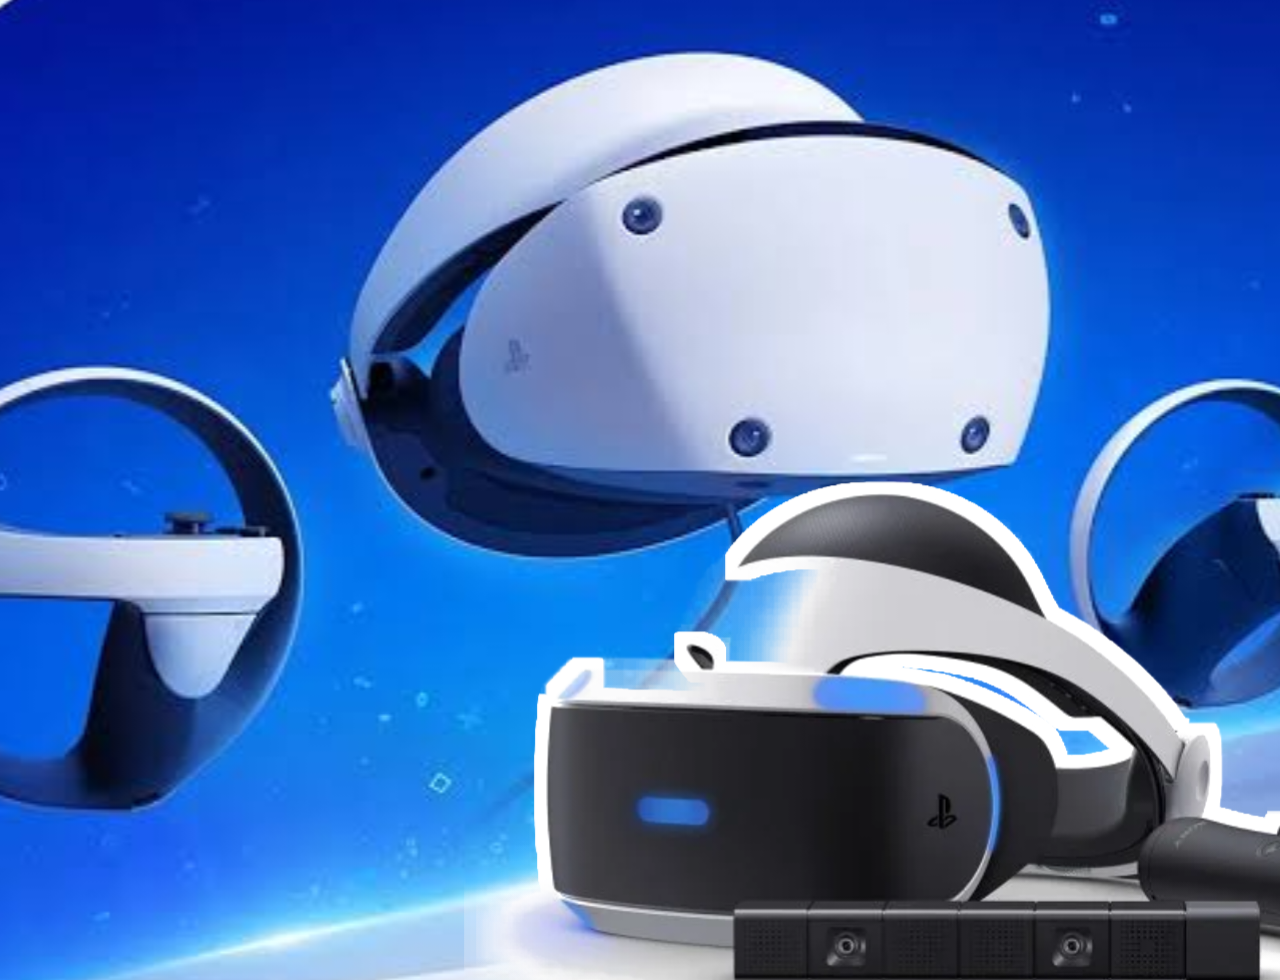 Fitur-Fitur dan Keunggulan PlayStation VR 2 PS5 Patut Diketahui Gamers